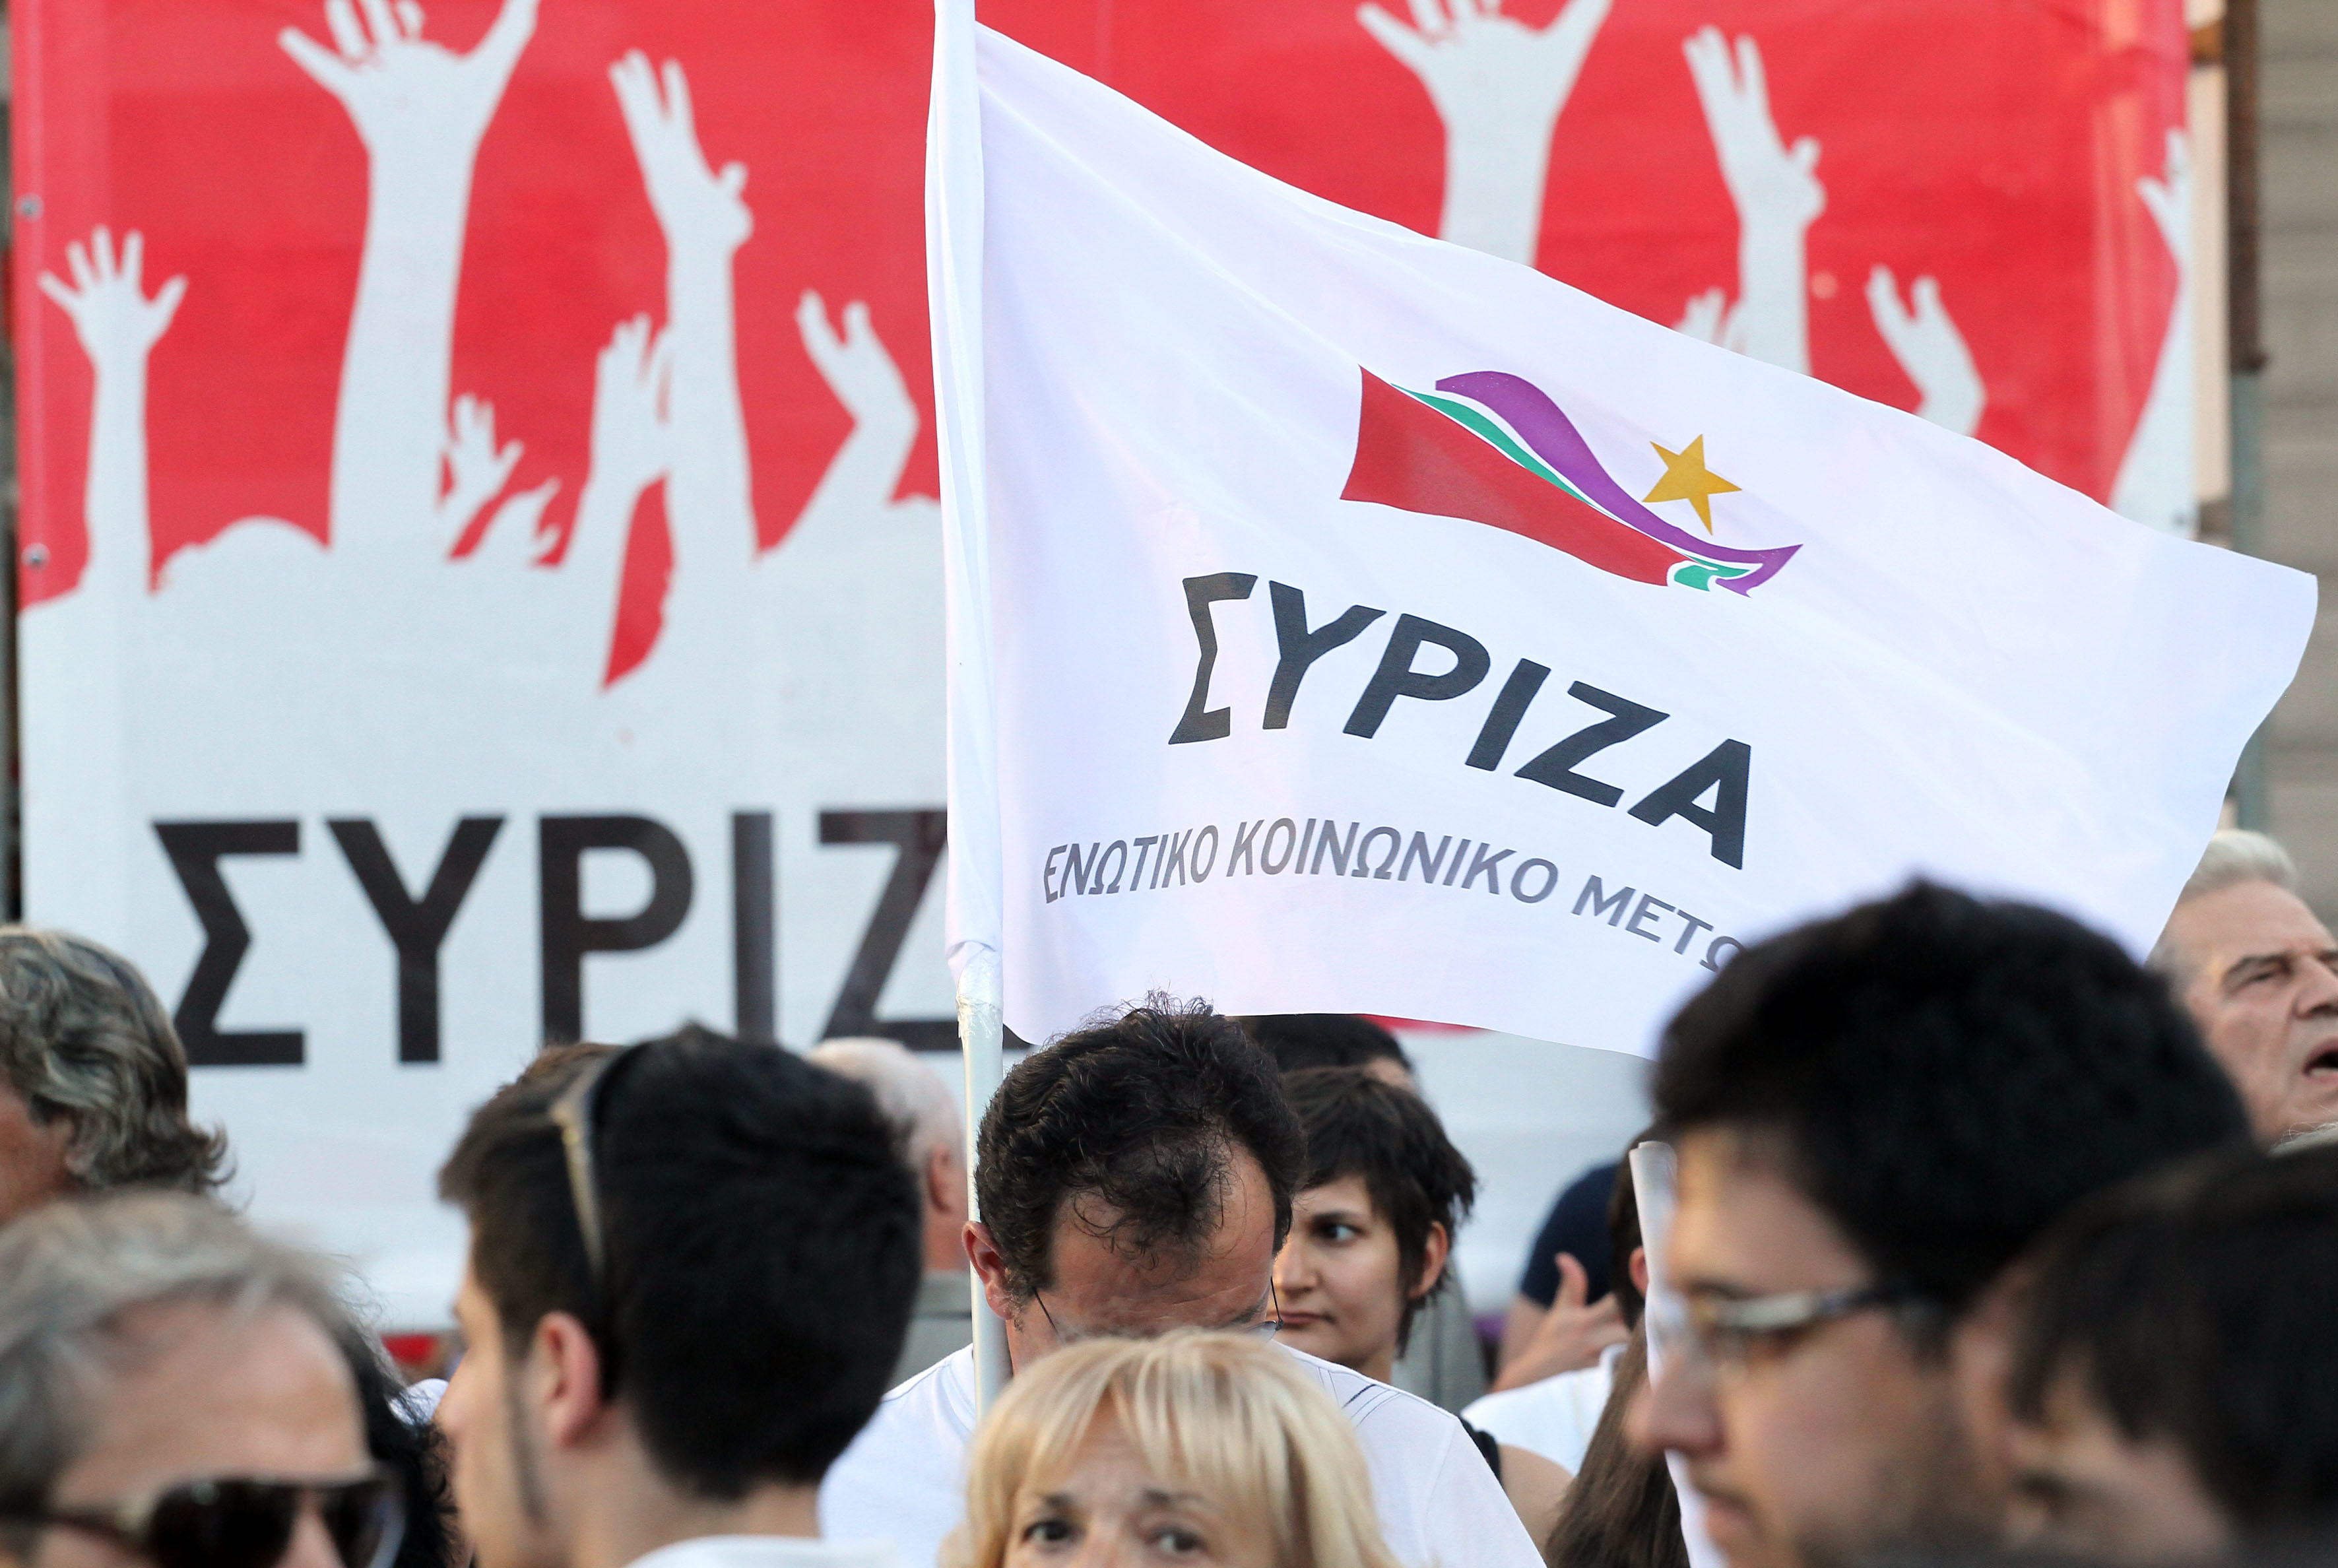 ΣΥΡΙΖΑ: Μάταια ο ελληνικός λαός περίμενε να ακούσει για επαναδιαπραγμάτευση